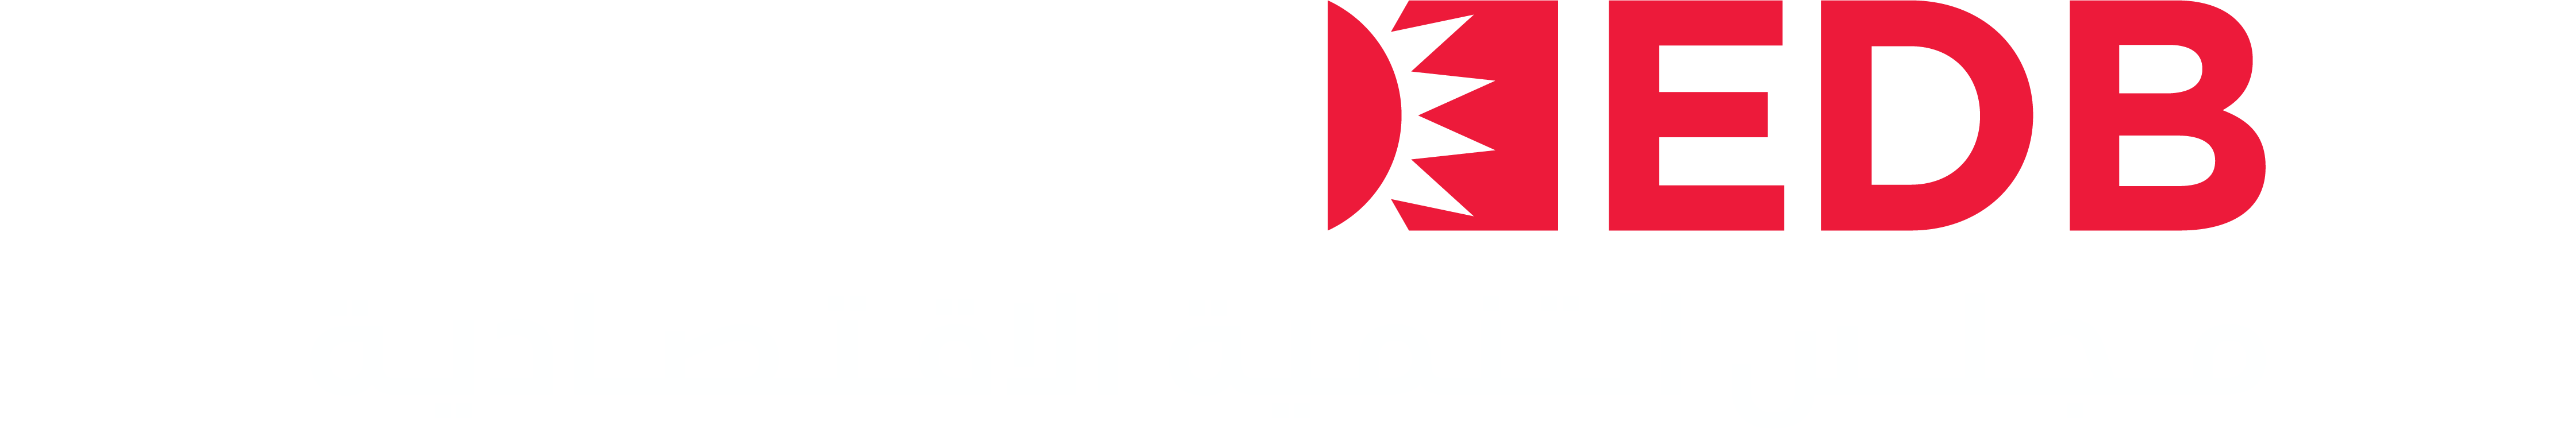 مجلس التنمية الاقتصادية البحرين